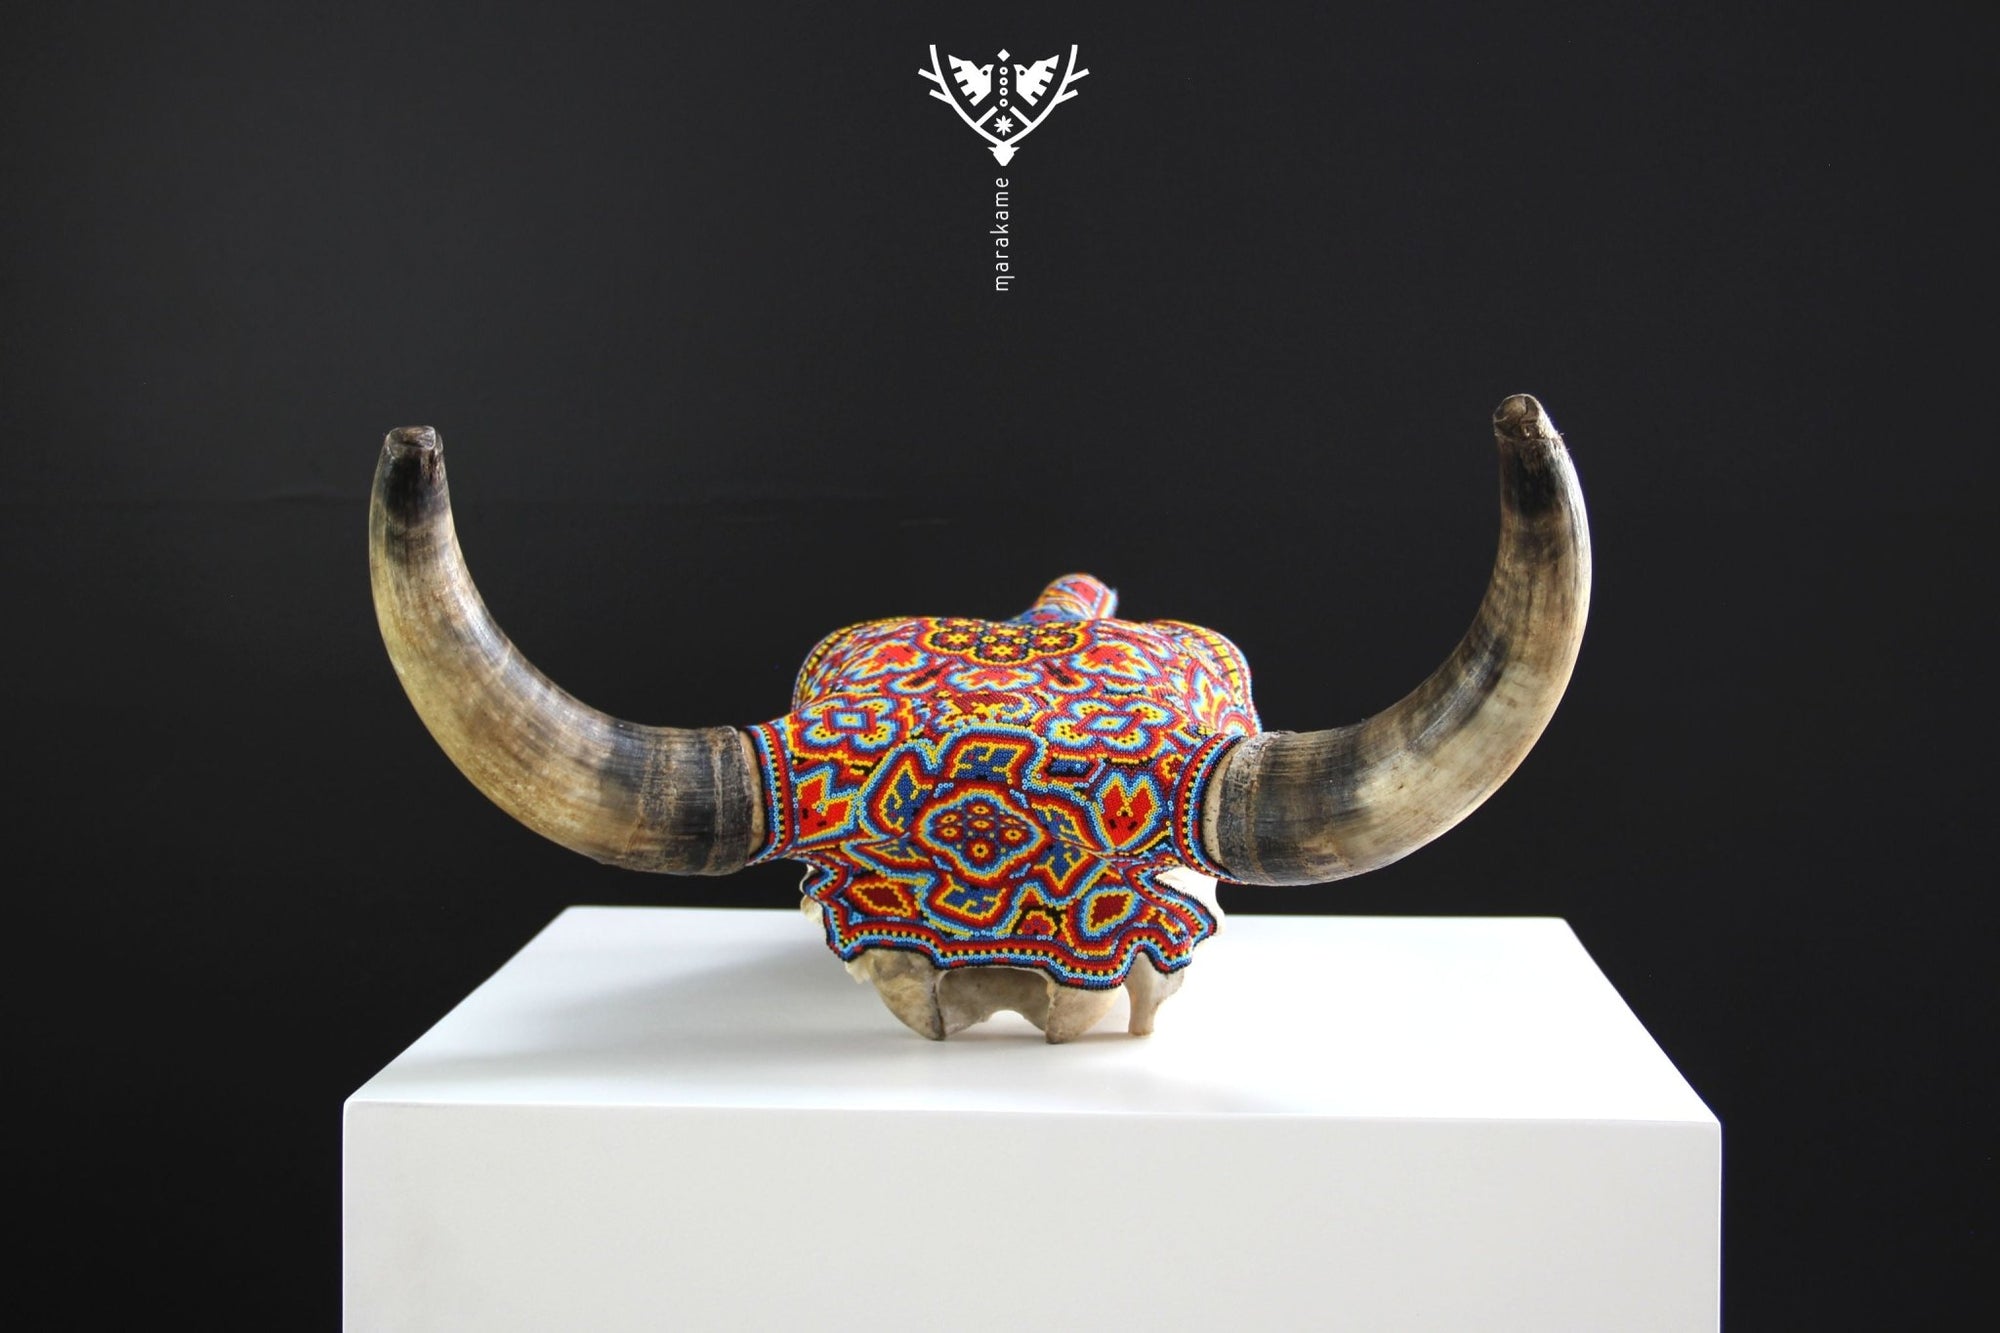 牛の頭蓋骨のウイチョルアート - ヒクリのメイズ - ウイチョルアート - マラカメ